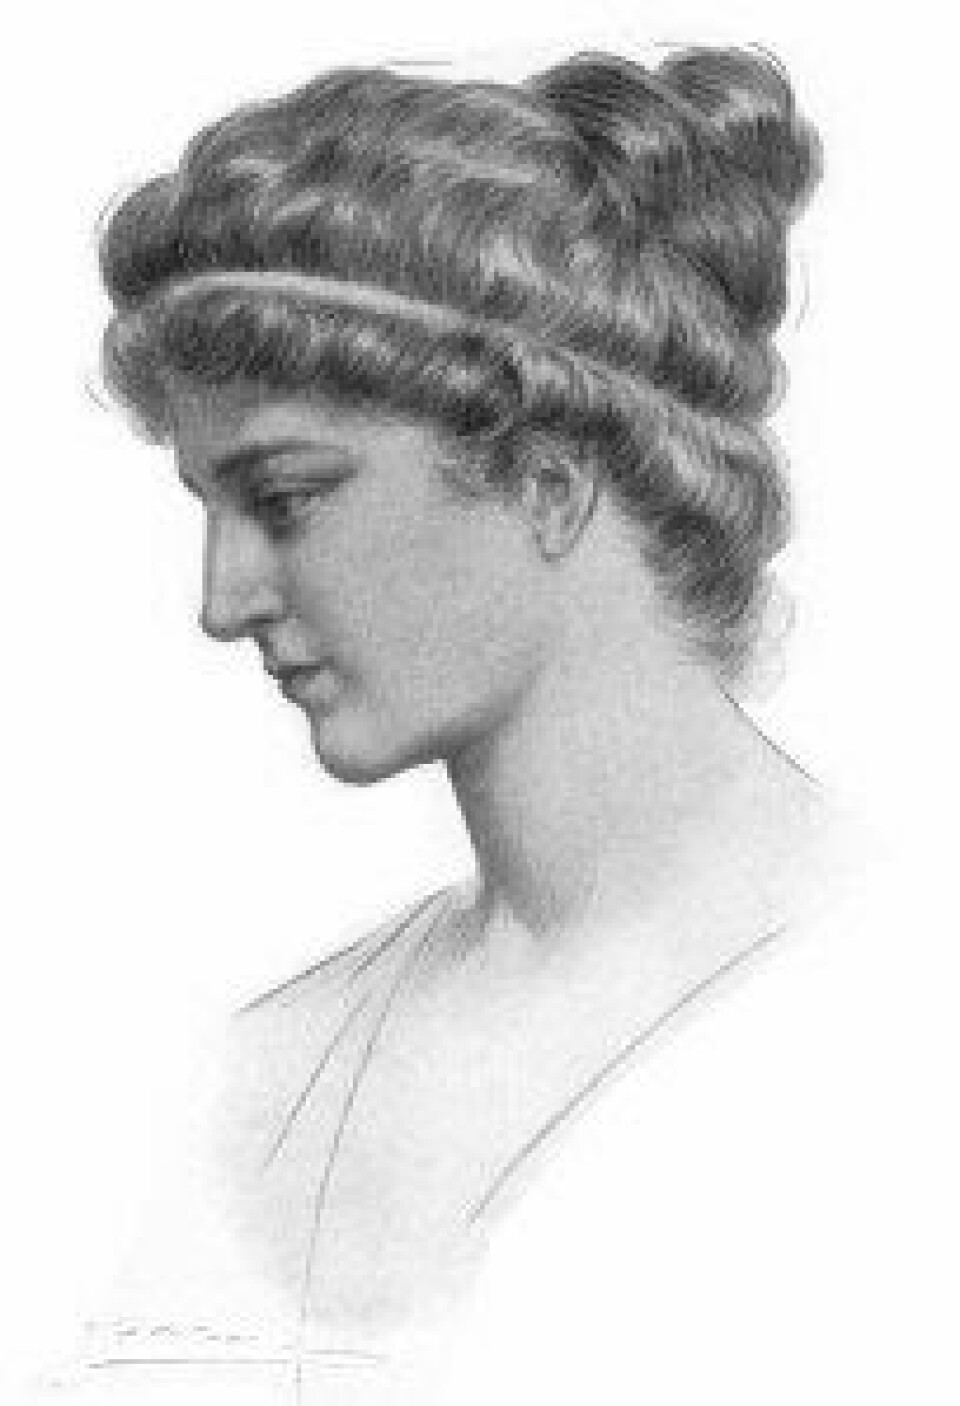 Matematikeren og filosofen Hypatia ble myrdet i 415 e.Kr. Her illustrert med Jules Maurice Gaspards portrett fra 1908 (via Wikimedia commons).